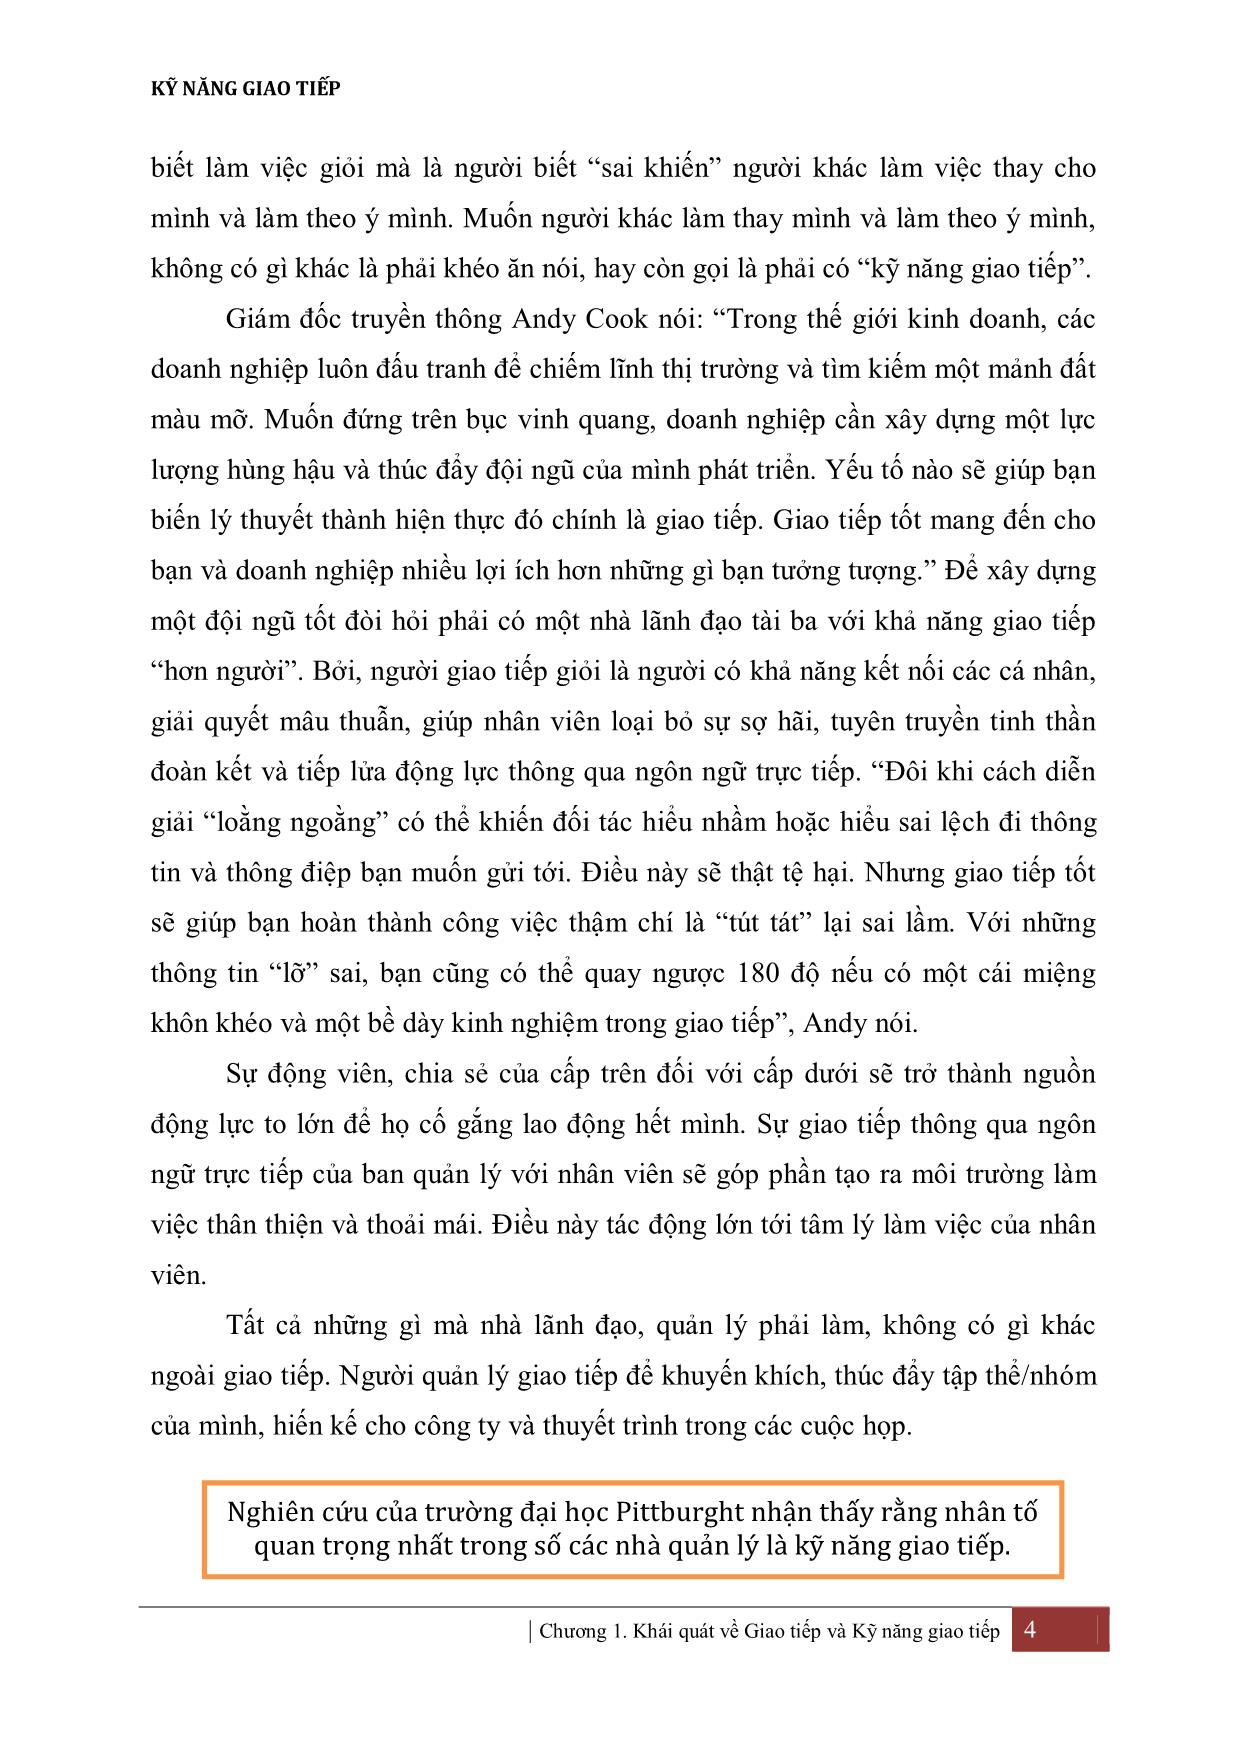 Giáo trình Kỹ năng giao tiếp - Nguyễn Thị Vân Thanh trang 10